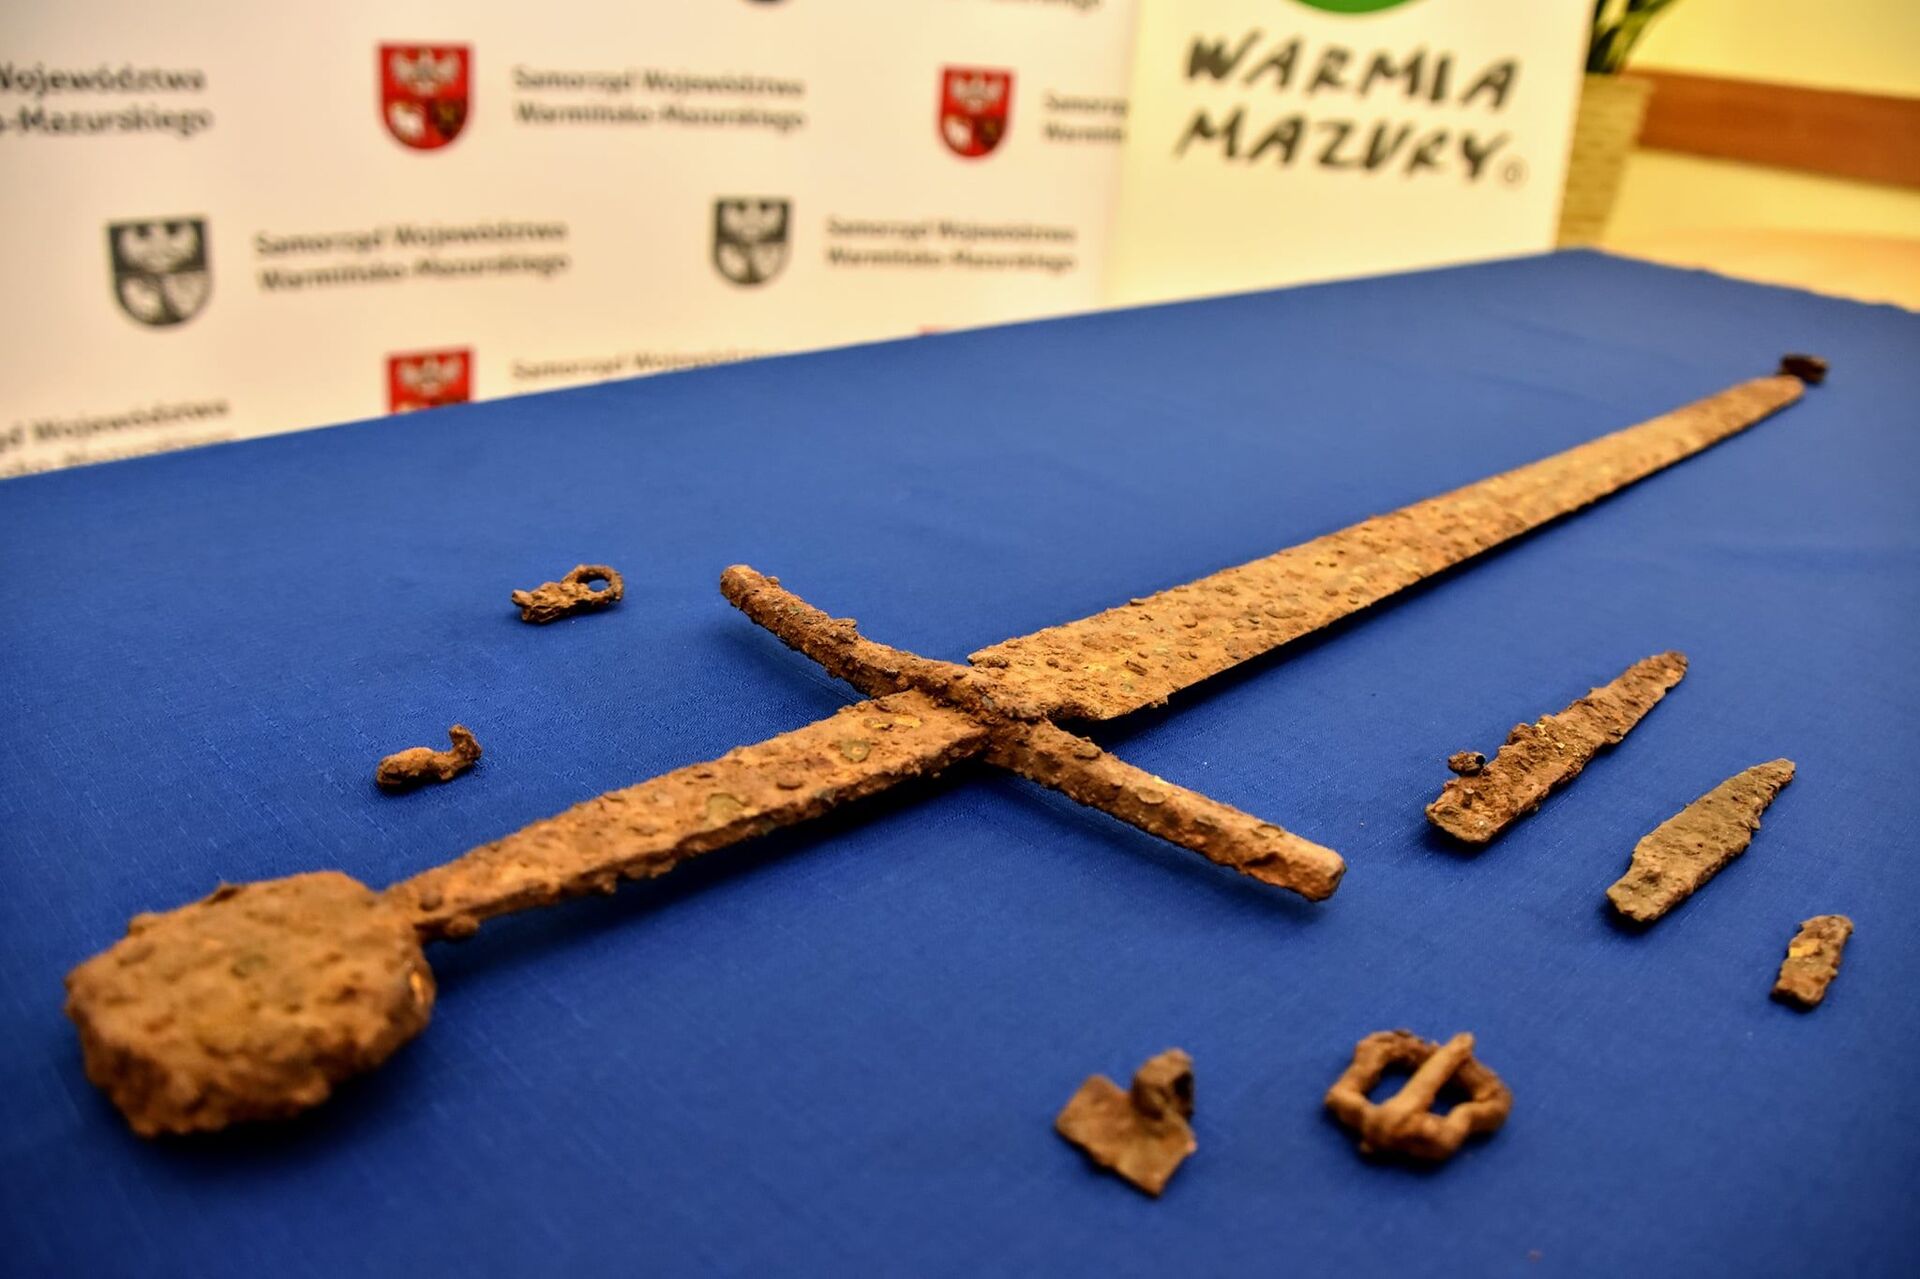 Descobertas na Polônia armas de cavaleiro usadas em batalha medieval há 600 anos (FOTOS) - Sputnik Brasil, 1920, 24.04.2021